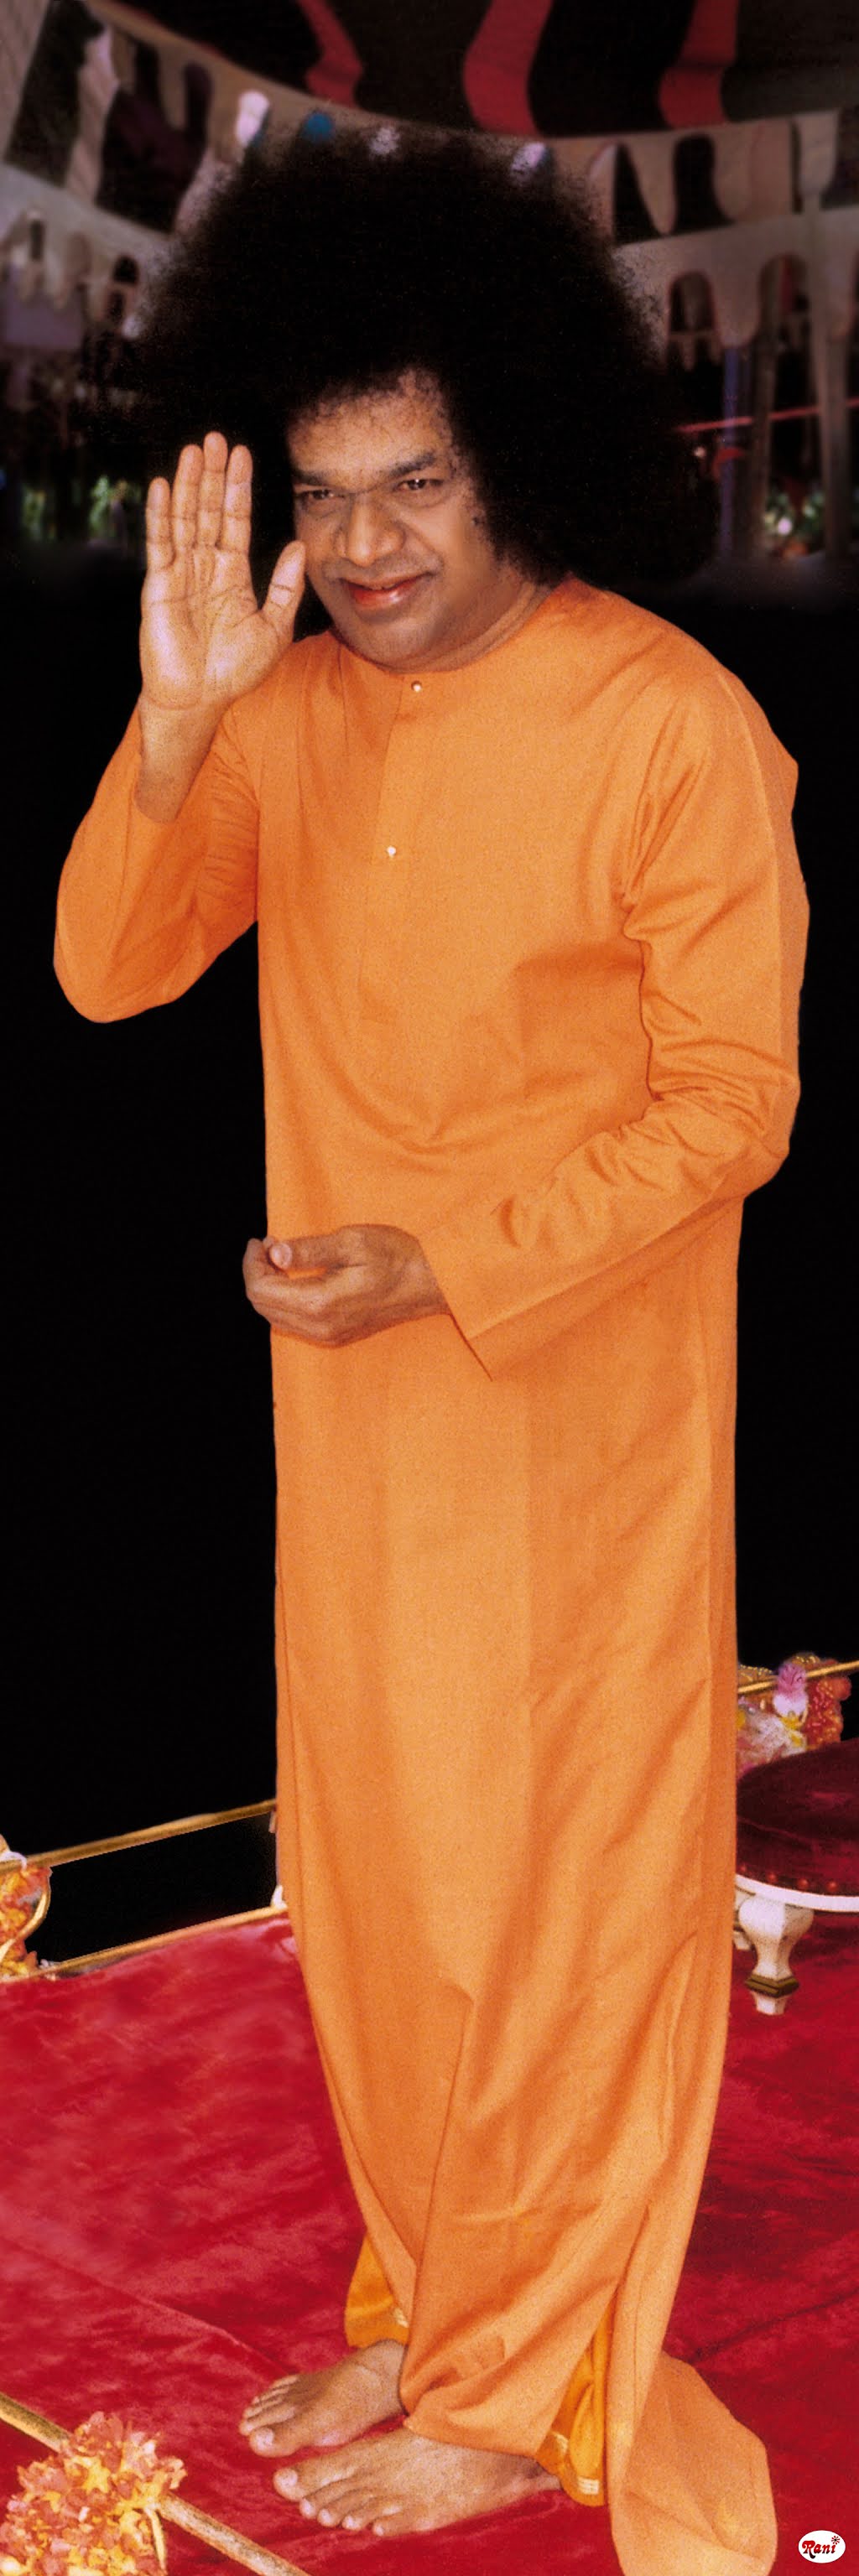 The Puttaparthi Sai Baba. Sai Baba of Puttaparthi. Sai from Prashanthi Nilayam